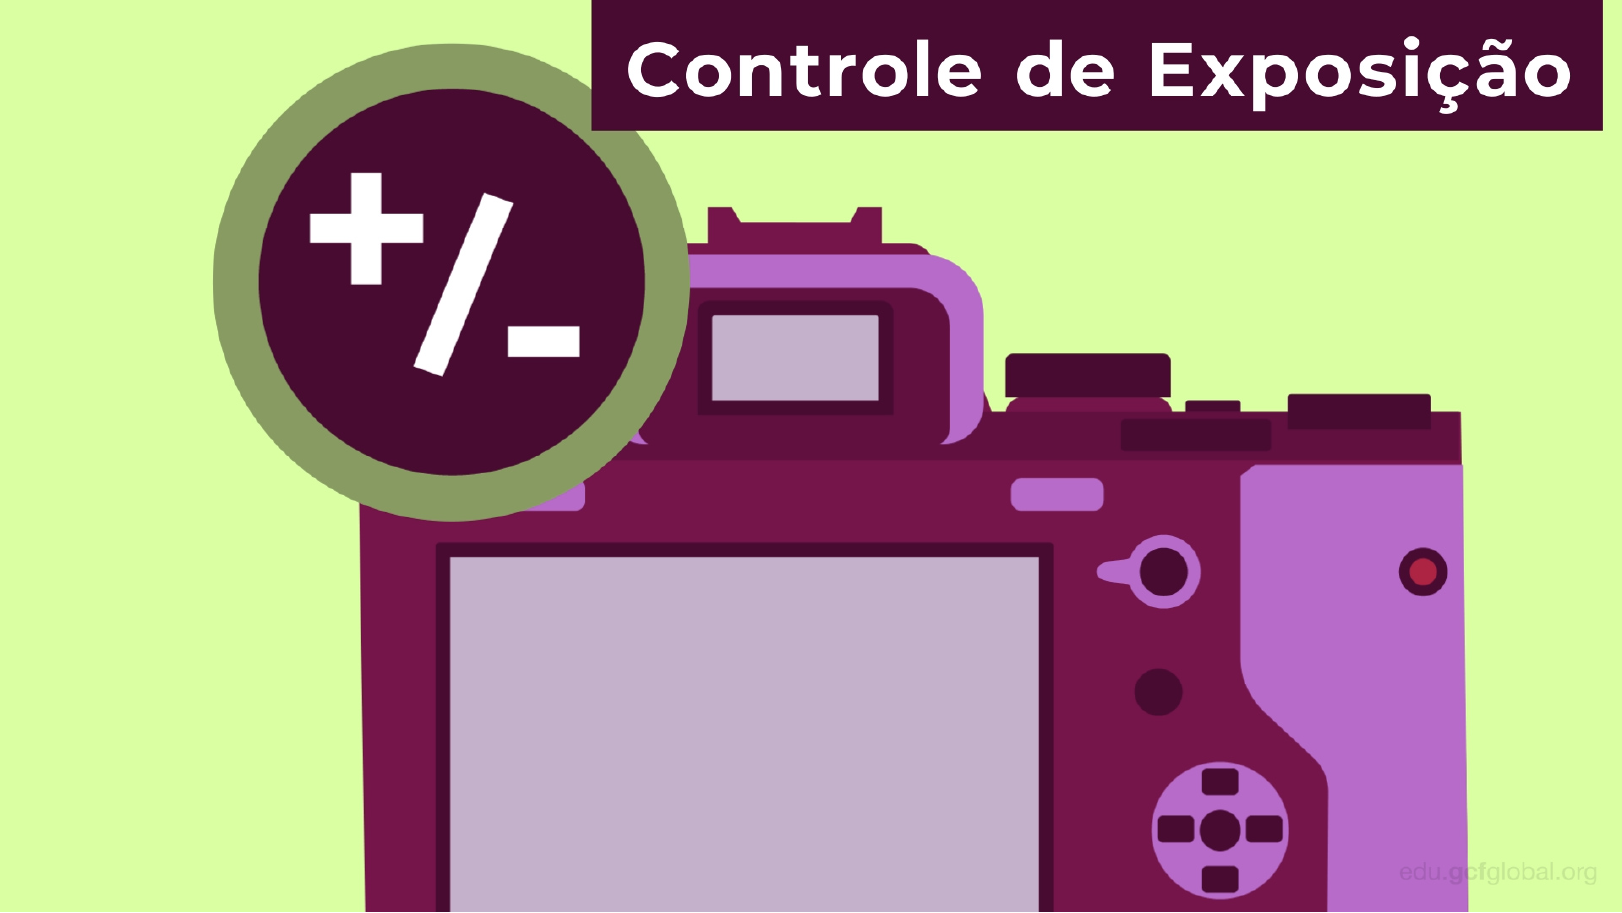 Quais são as partes de uma câmera: botão para controlar a exposição